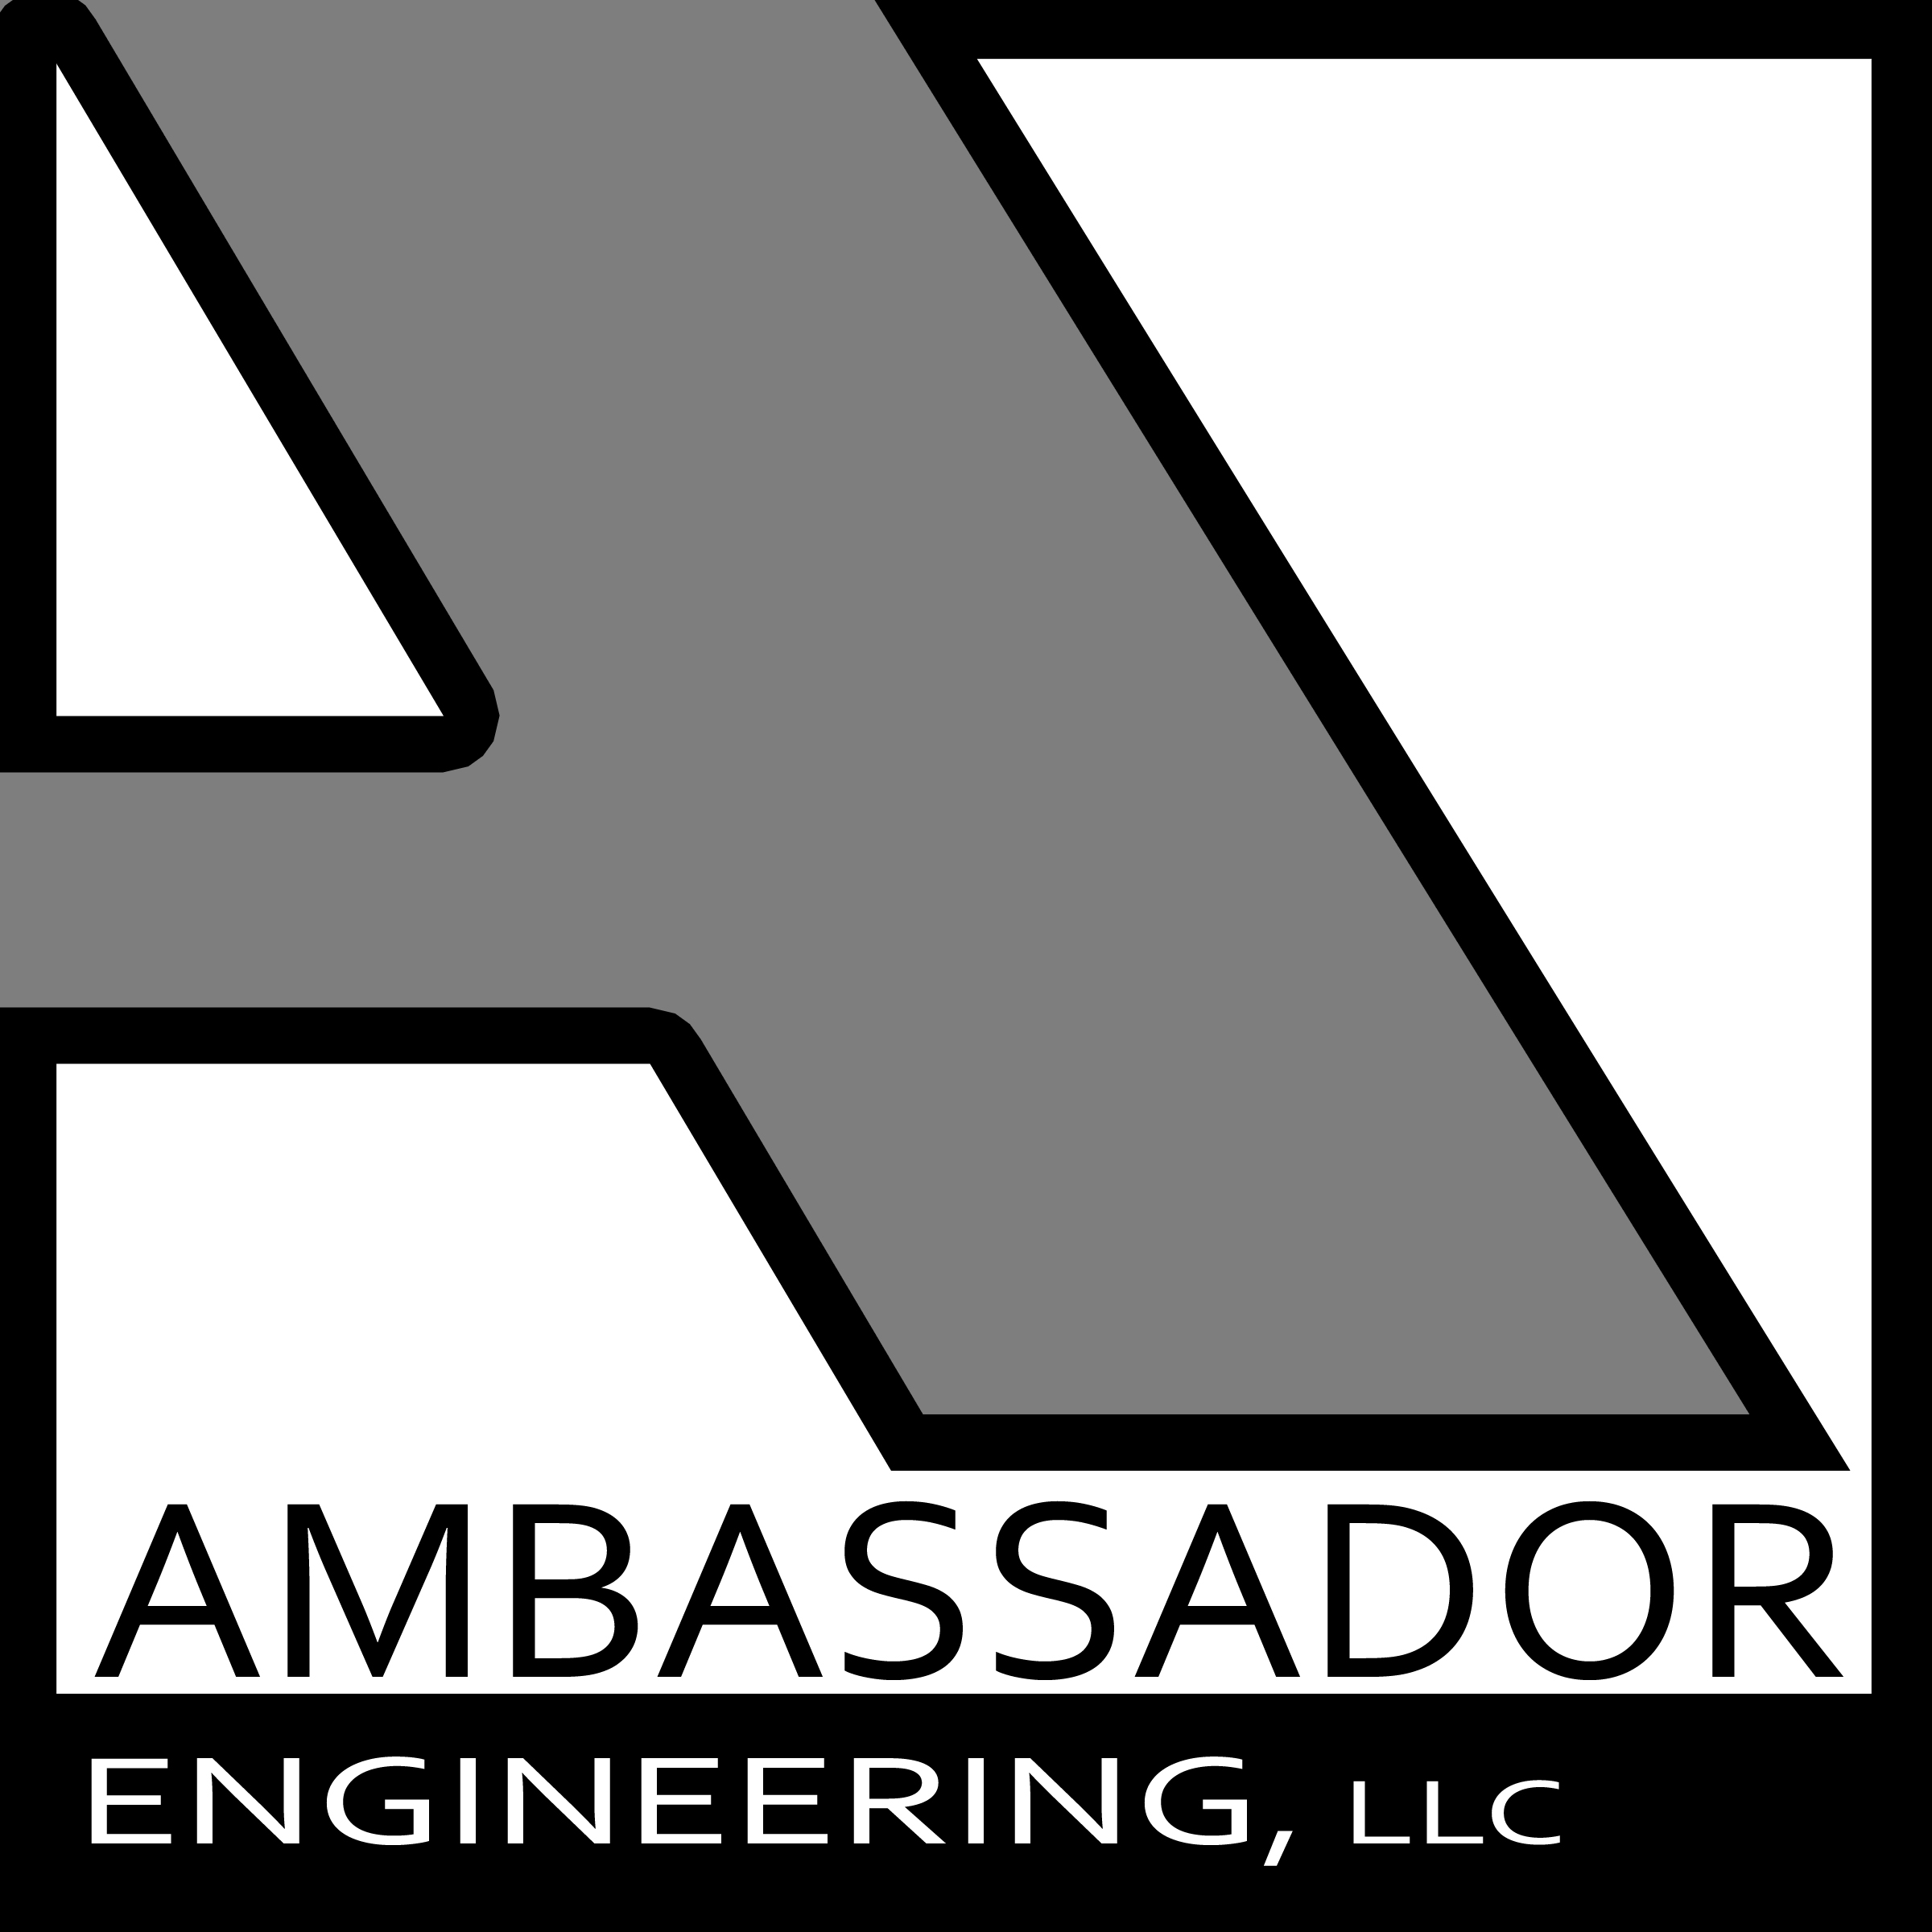 Ambassador Engineering